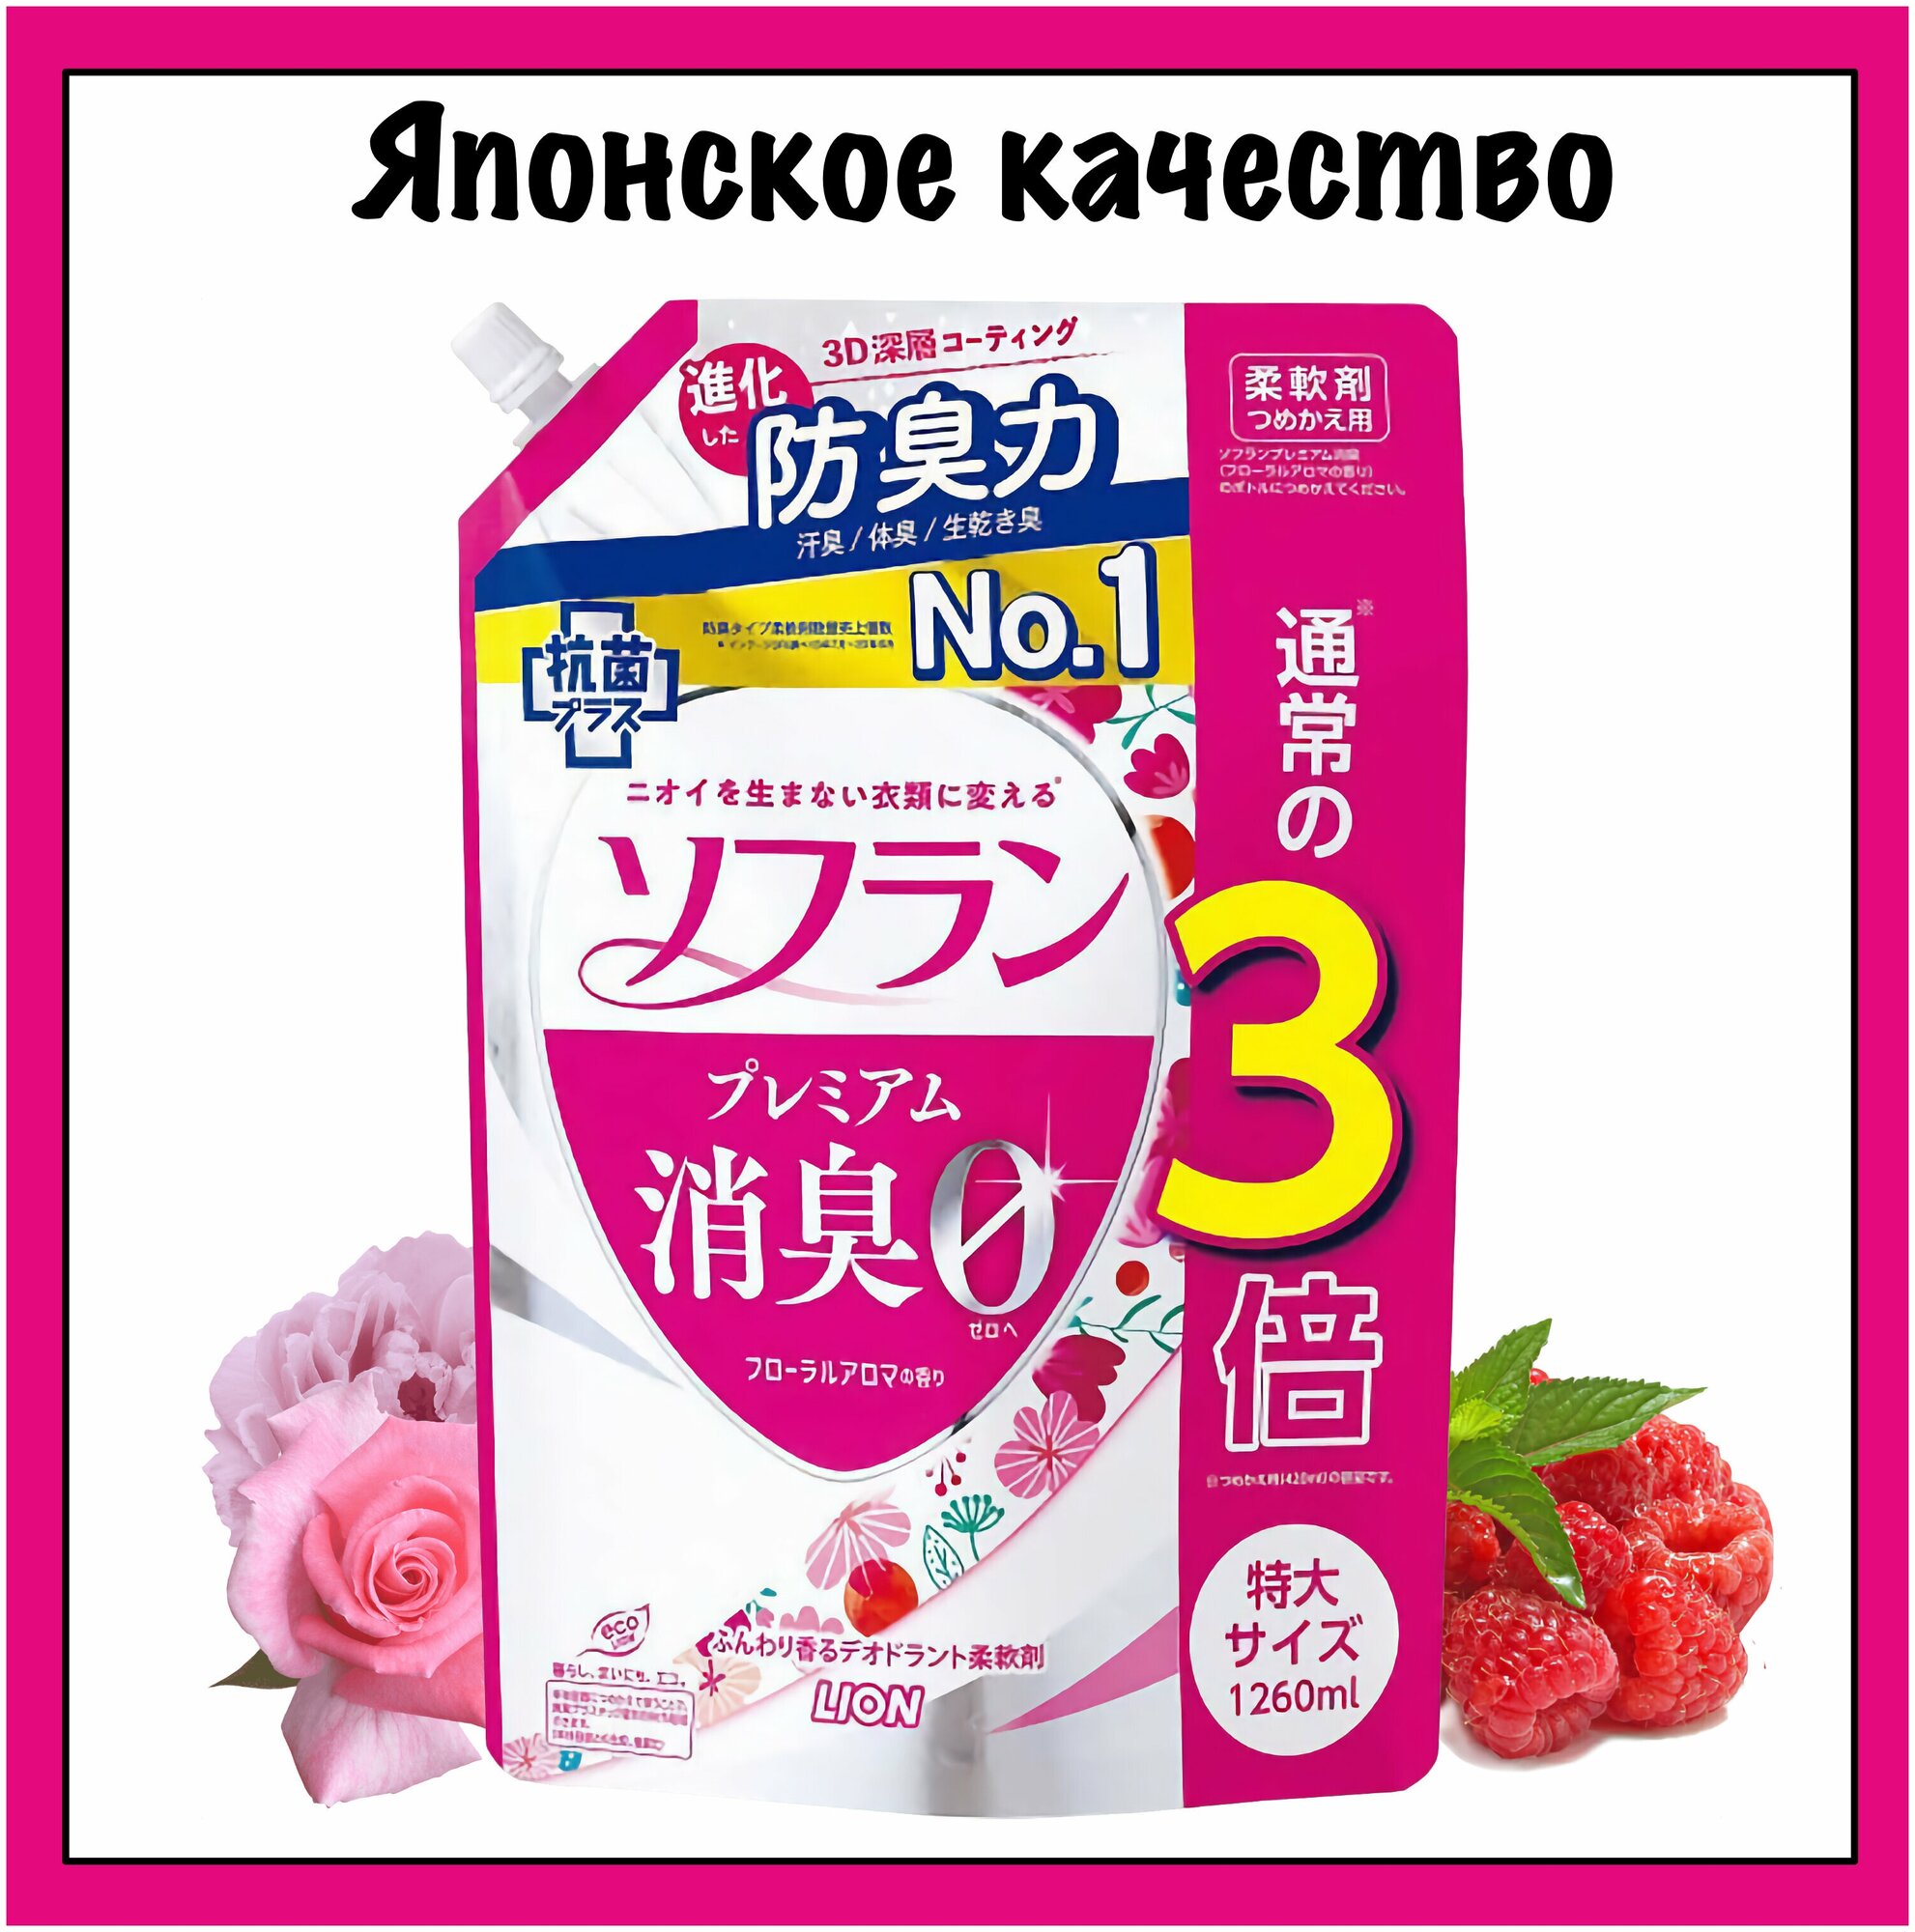 Lion Soflan "Floral" Японский кондиционер для белья с цветочным ароматом Premium Aroma, 1260 мл.